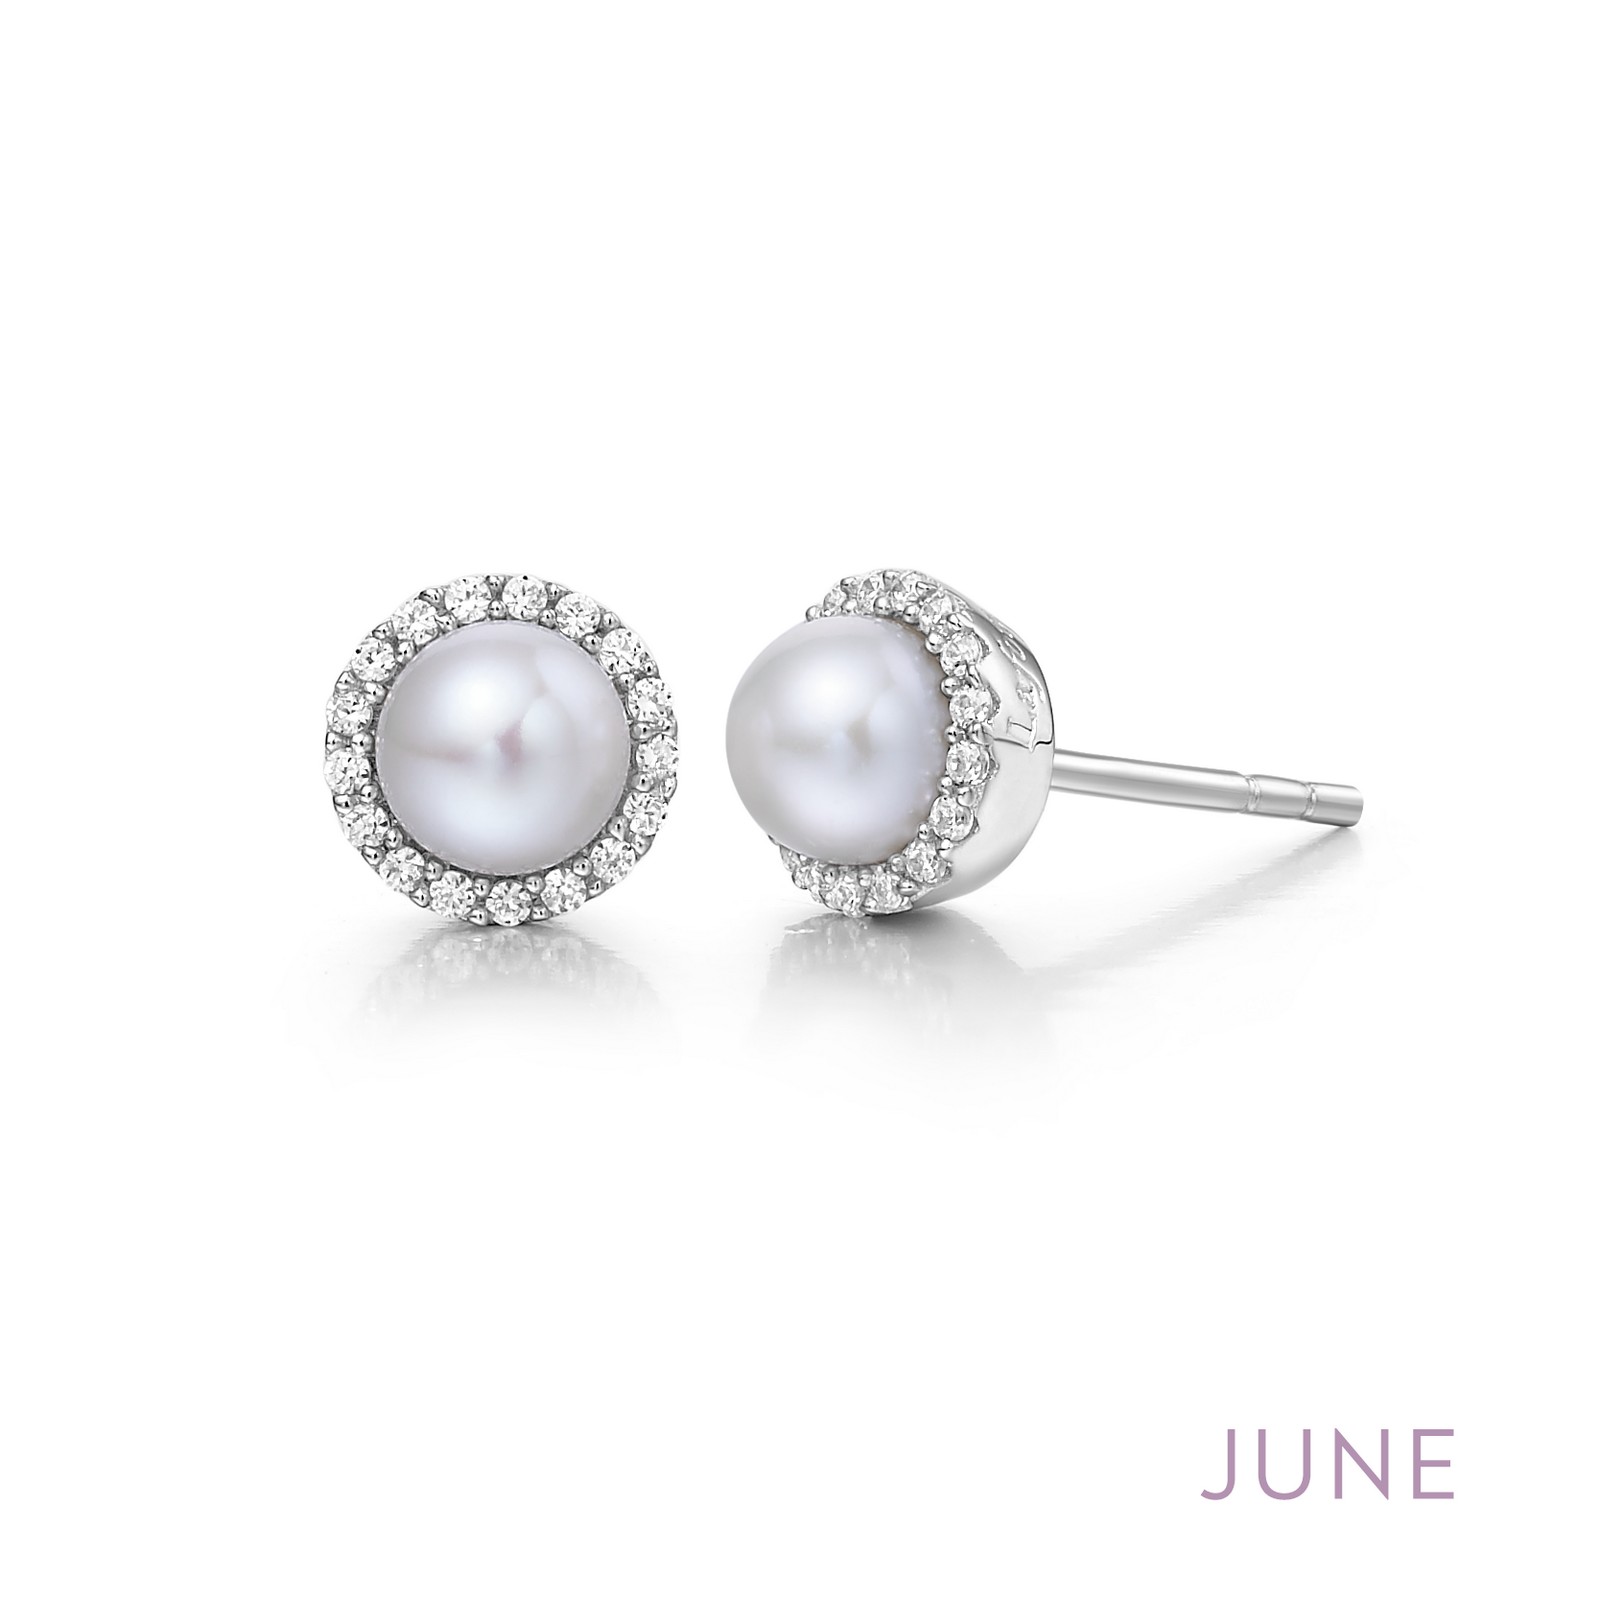 June Birthstone Earrings by Lafonn